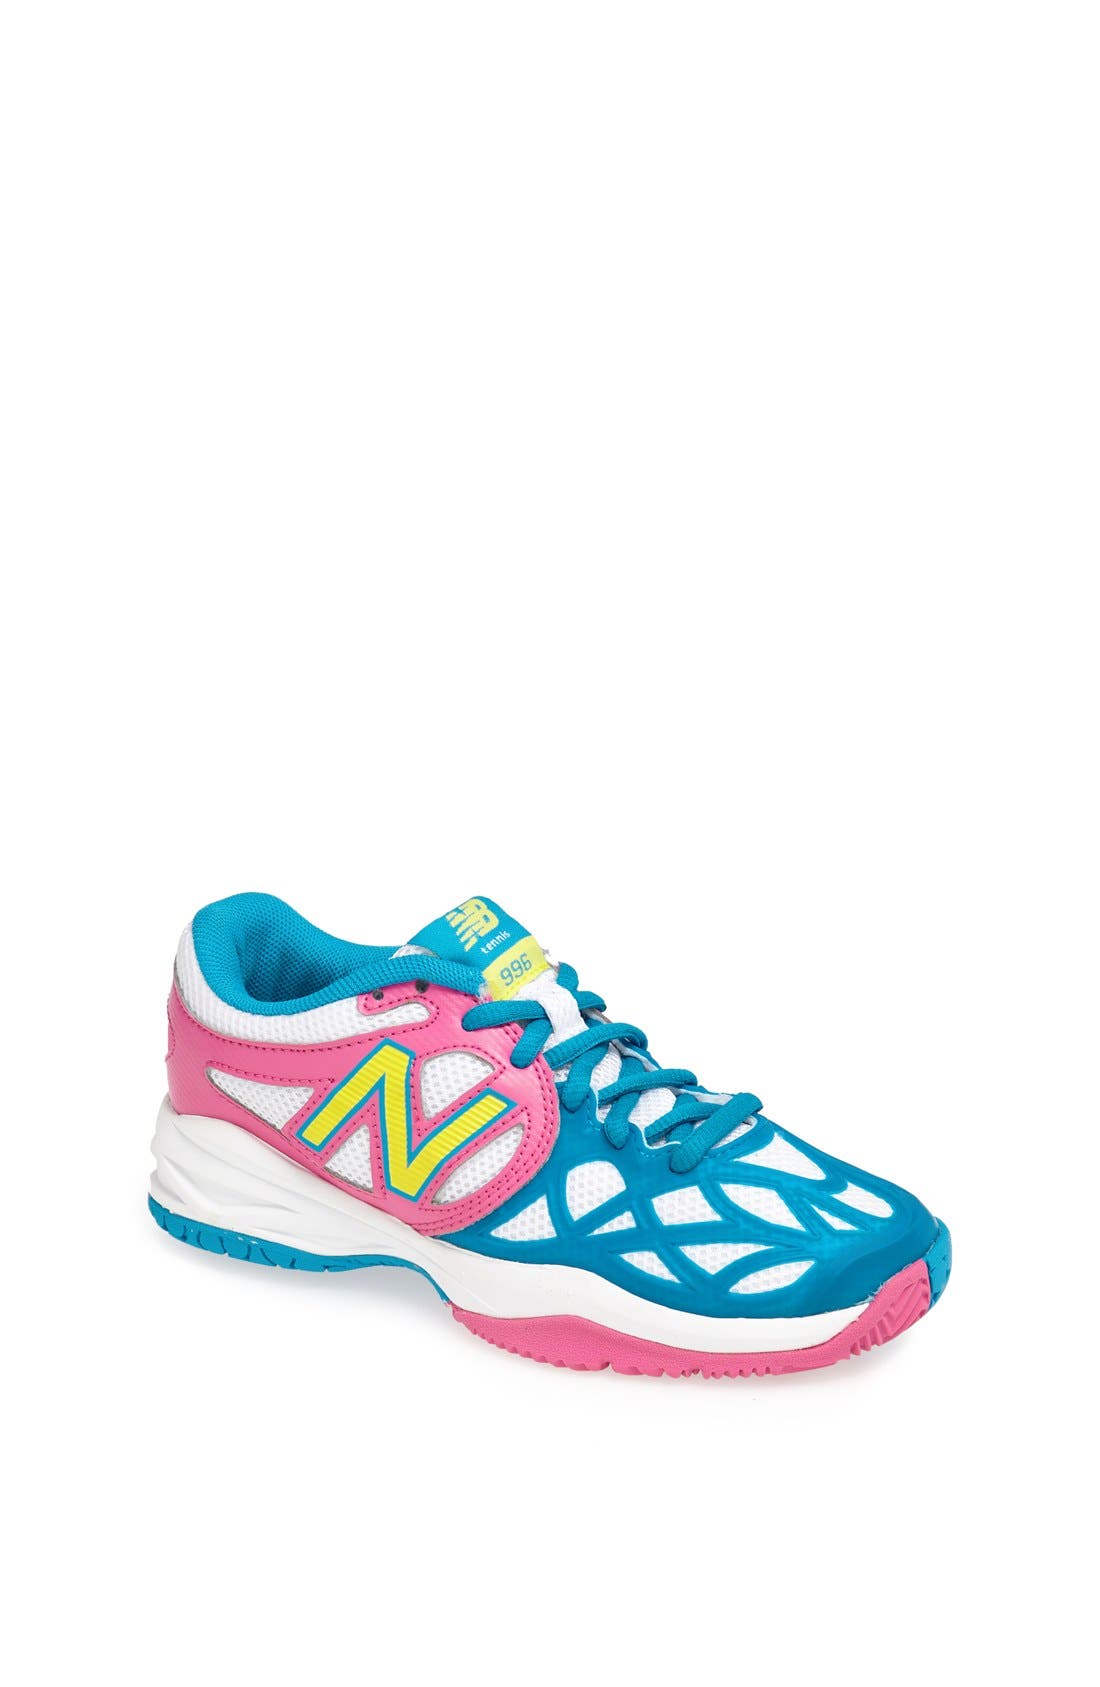 New Balance '996' Tennis Shoe (Toddler 